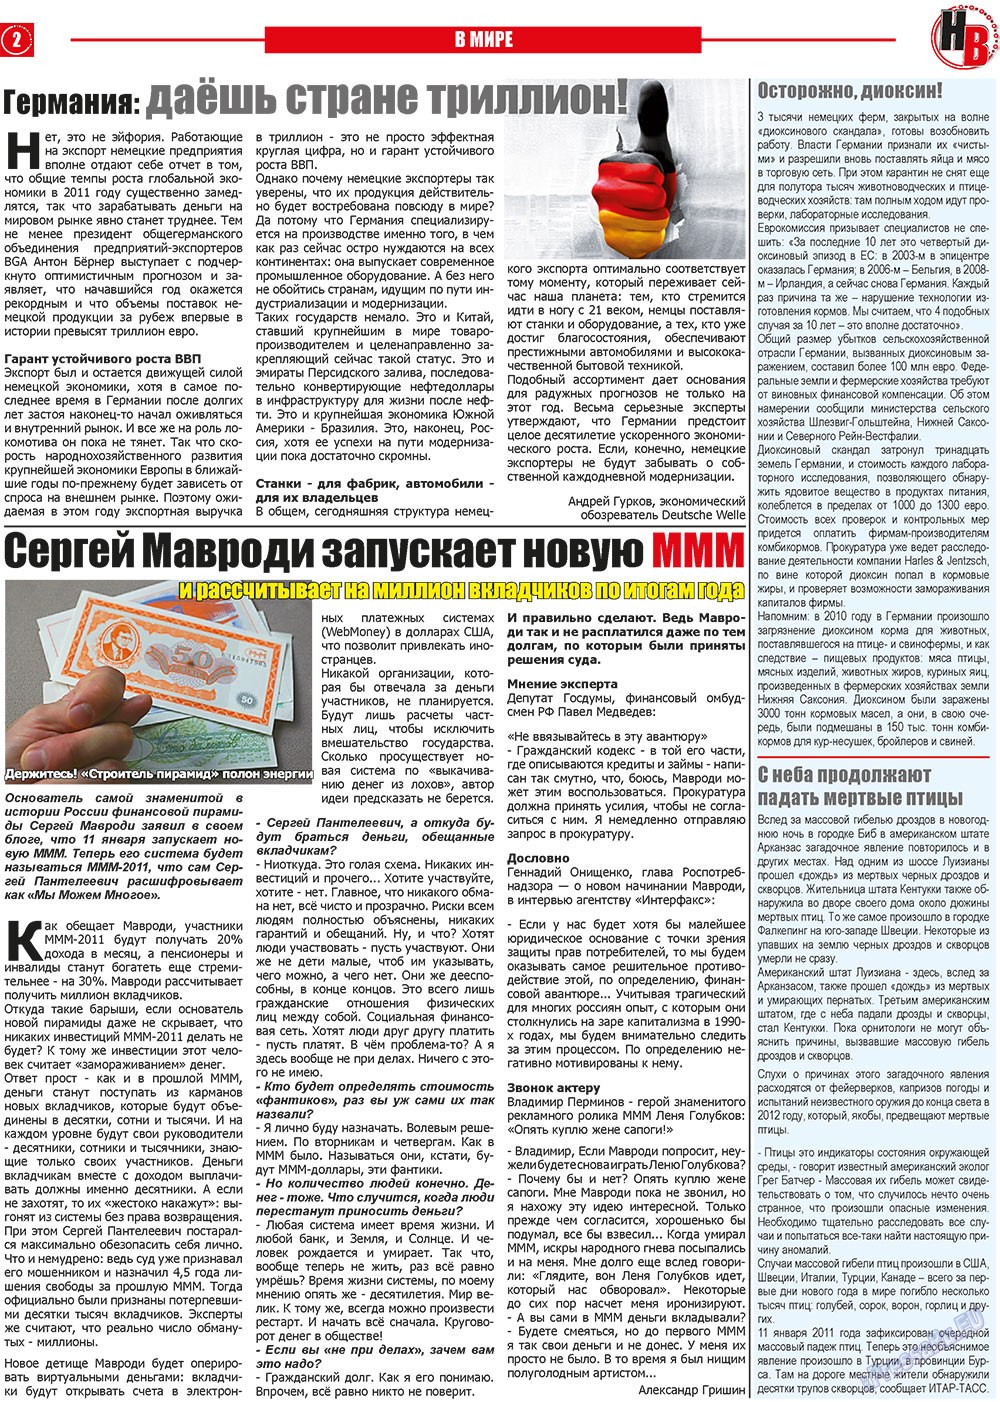 Наше время, газета. 2011 №1 стр.2